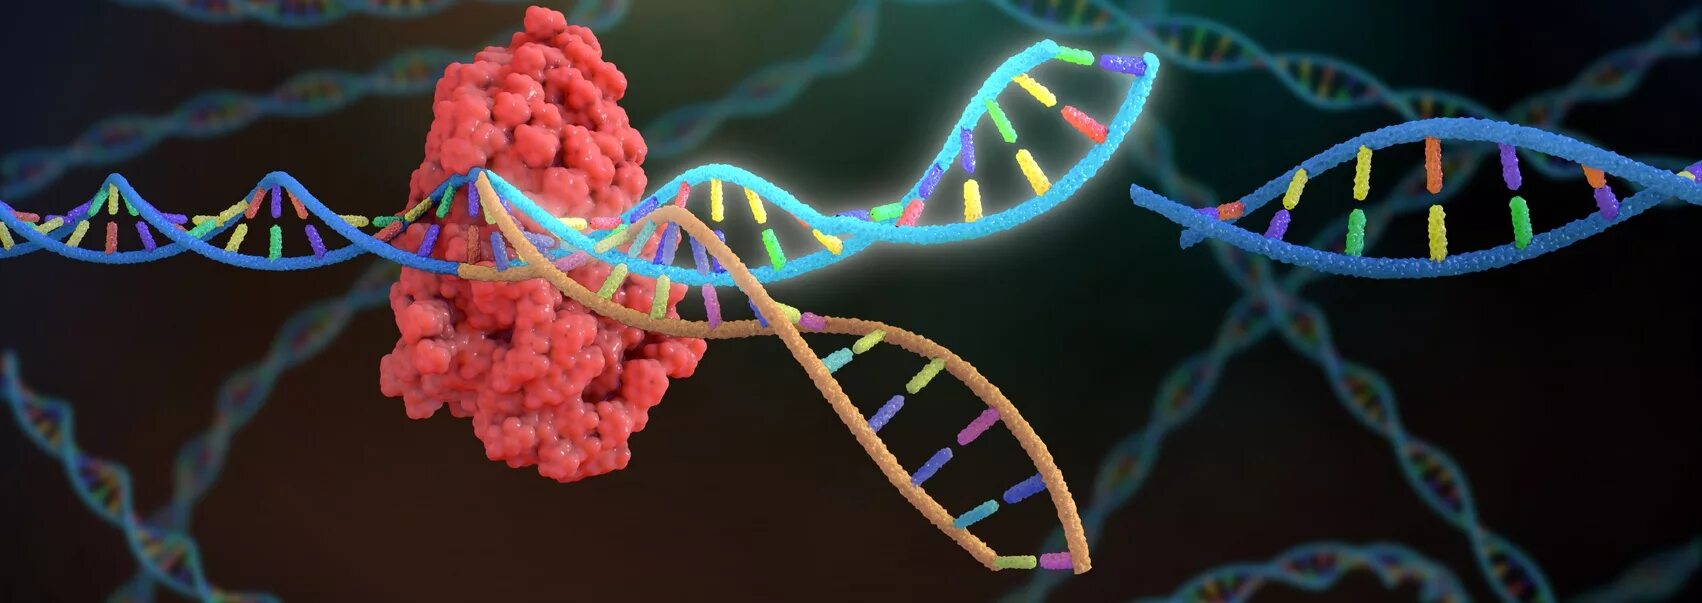 Ген заболел. CRISPR cas9 метод в технологии. Генная терапия. Мутация ДНК. Наследственные заболевания ДНК.